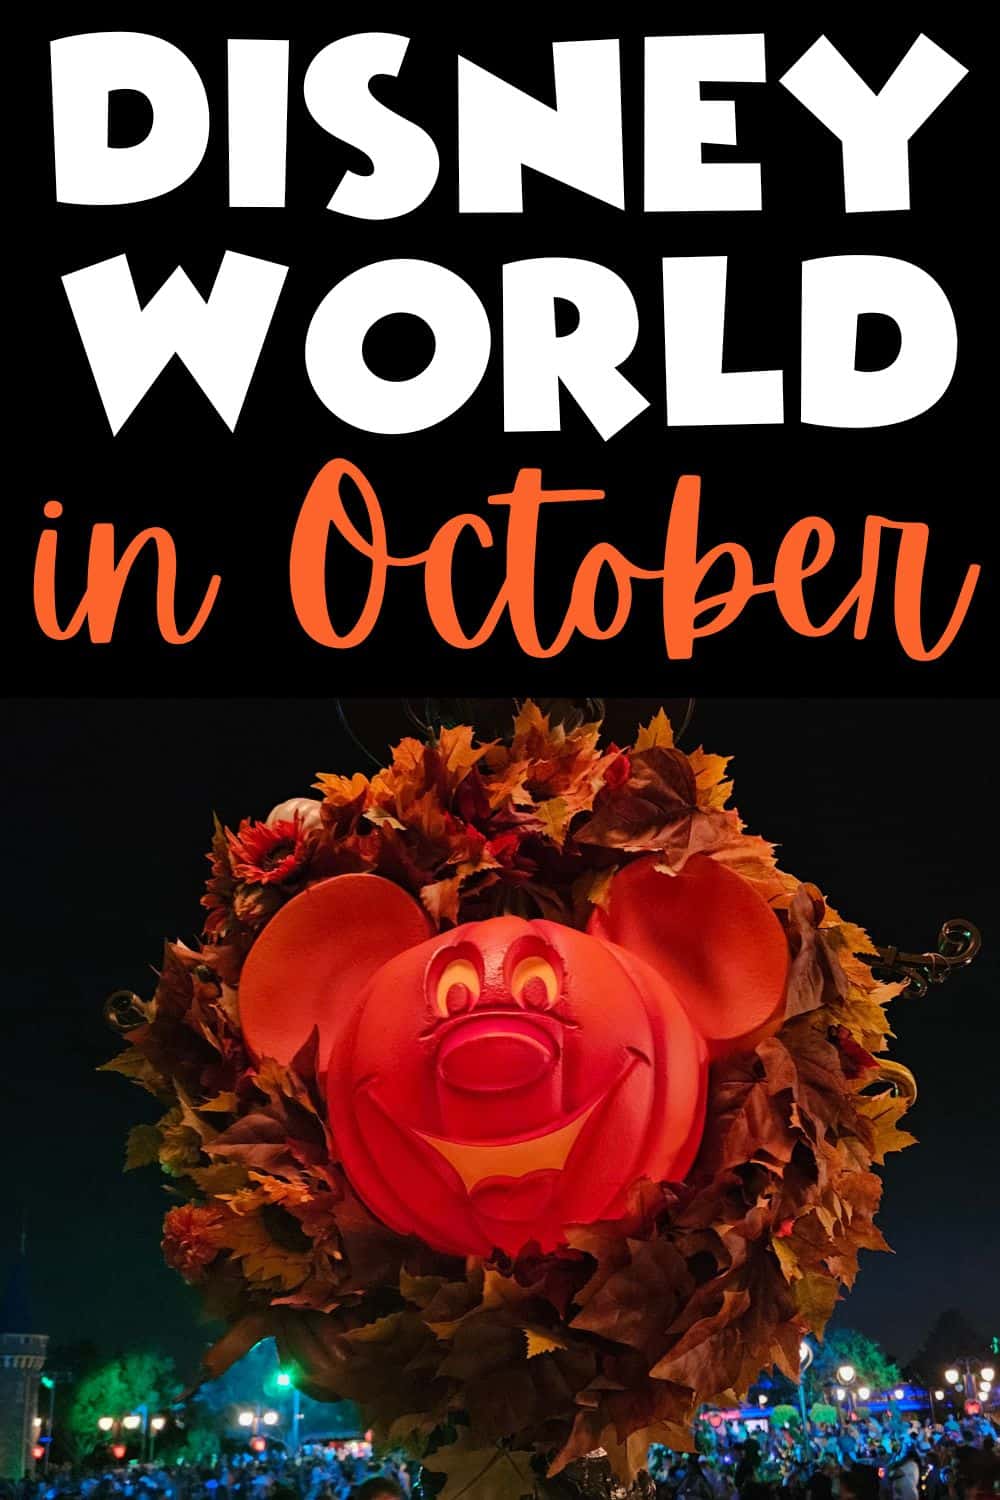 Disney World in October